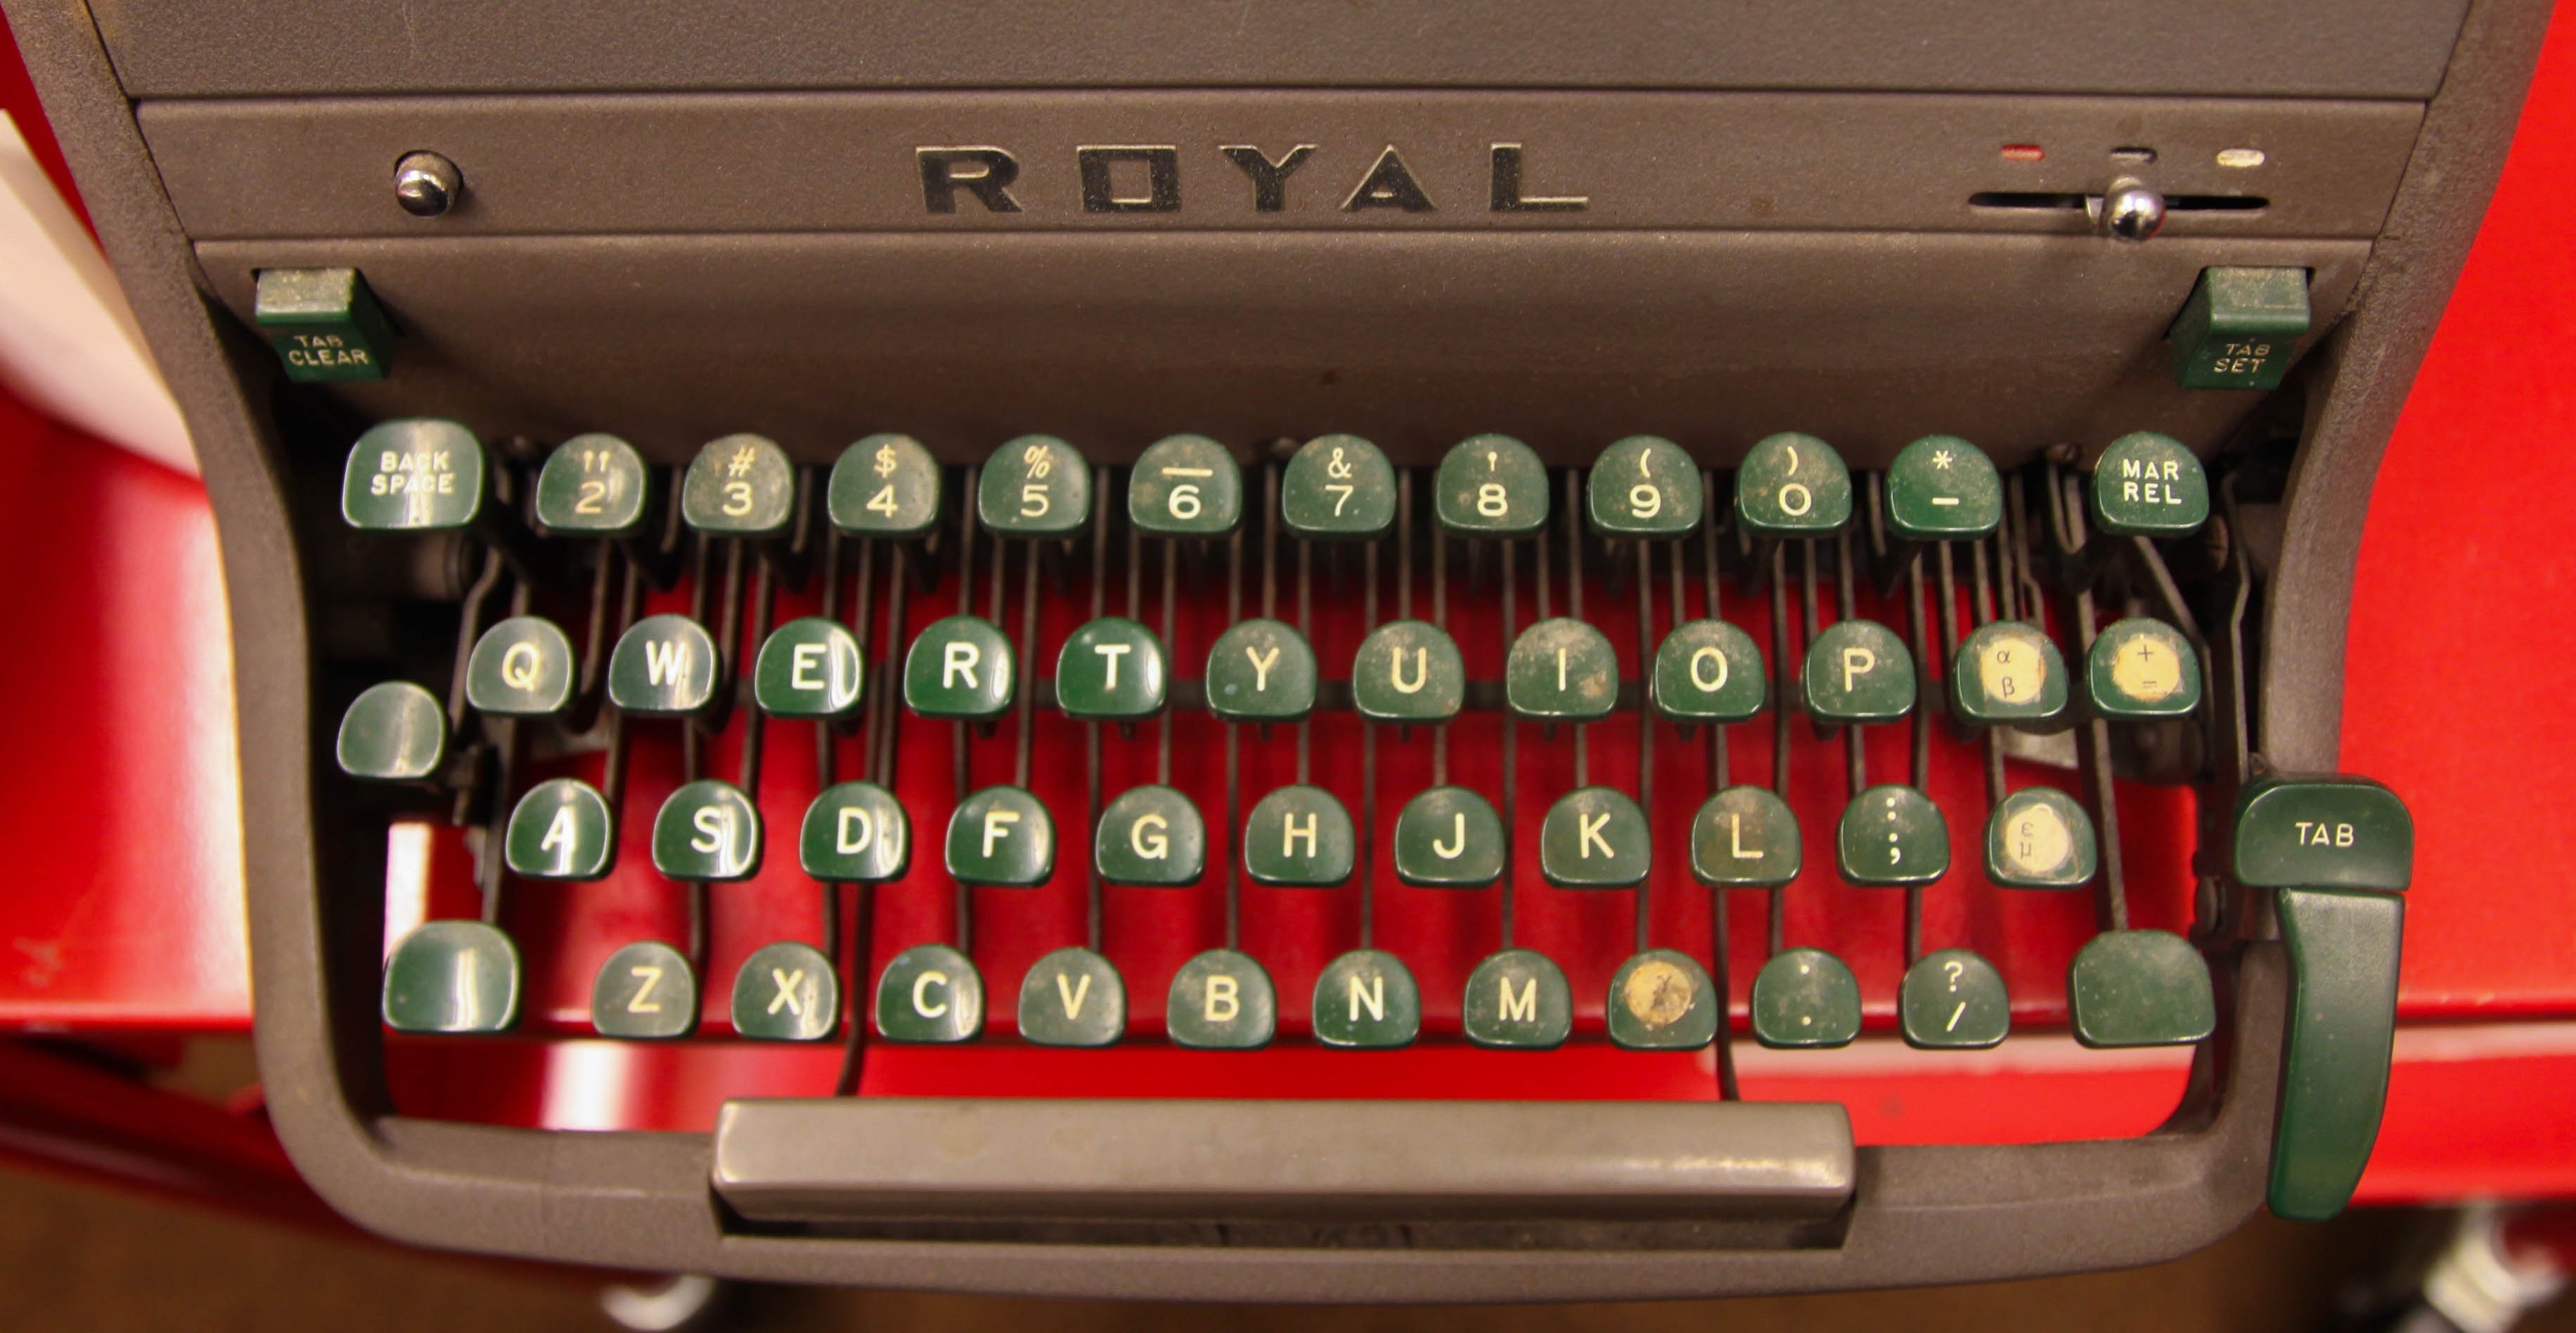 Royal typewriter keyboard